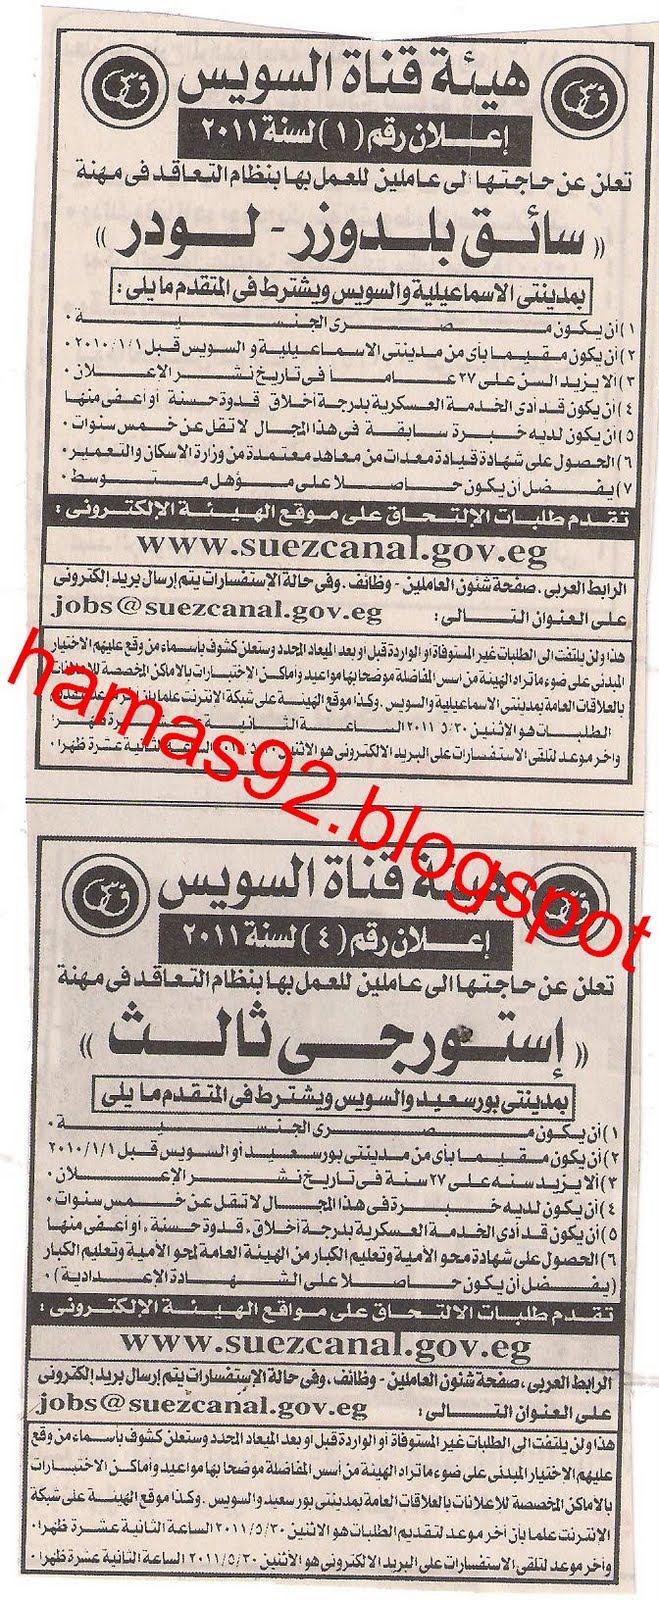 وظائف هيئة قناة السويس - وظائف الصحف المصرية الاثنين 16 مايو 2011 Picture+002